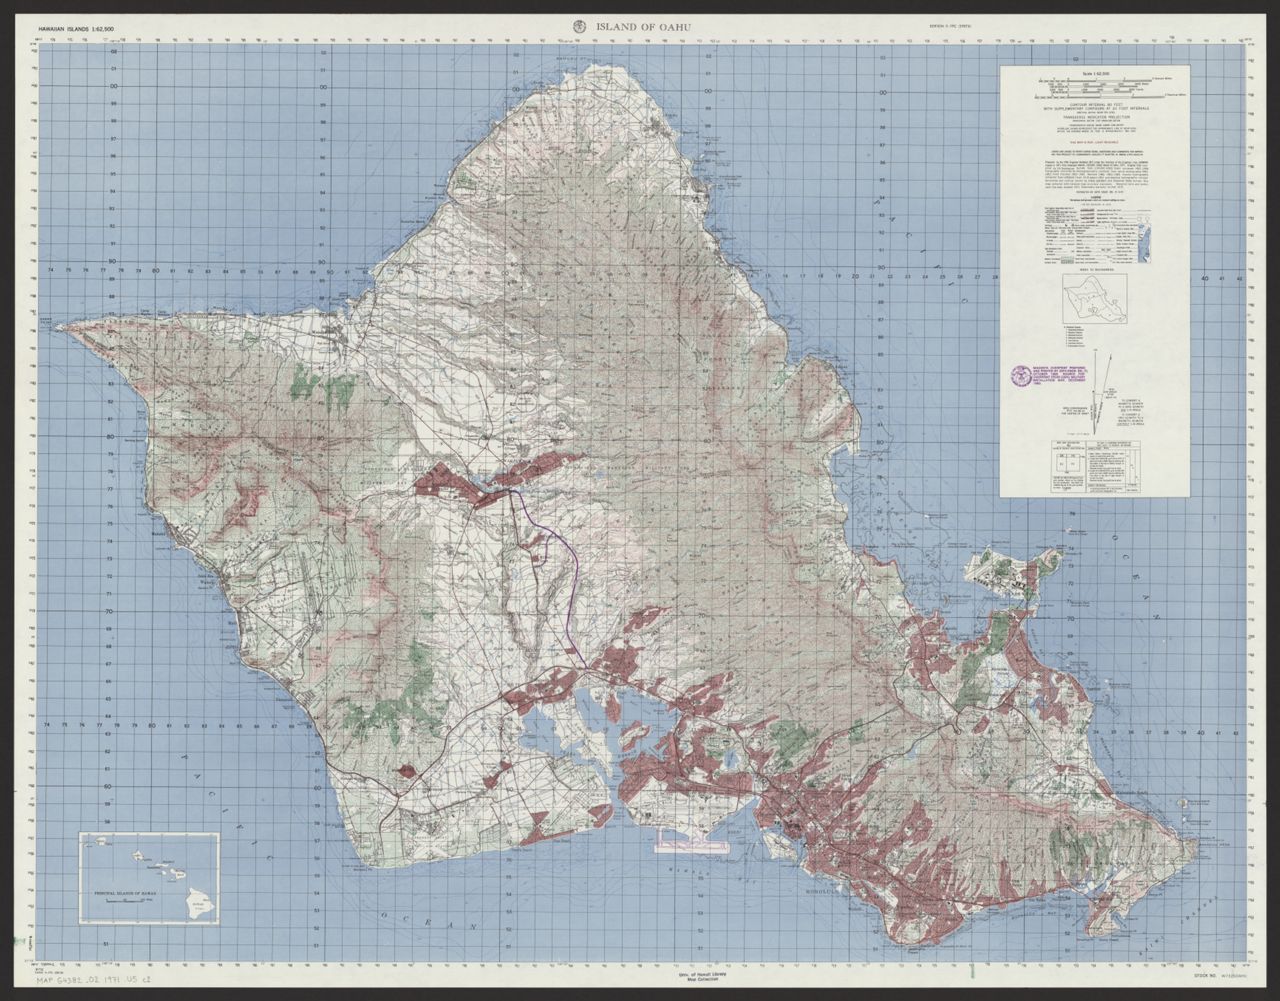 1971 Island of Oahu (W732, US Army, 29th Engineer Battalion)